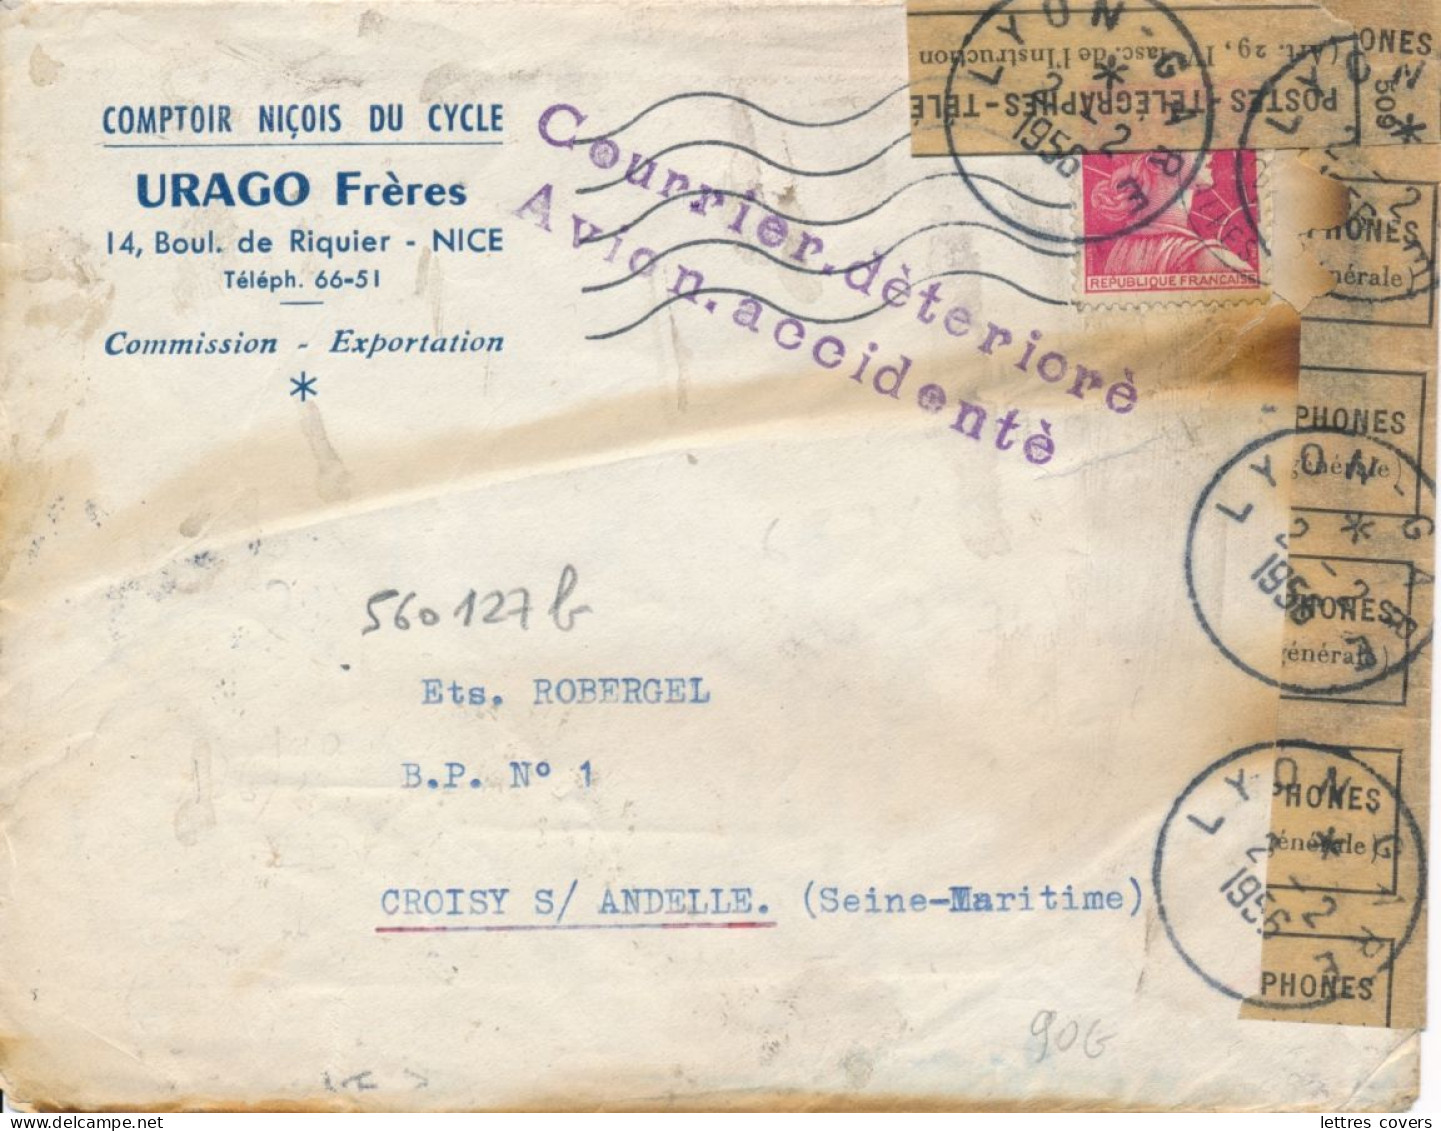 1956 Griffe " COURRIER DÉTÉRIORÉ AVION ACCCIDENTÉ " Crash à Bron Aéroport 27/1/56 - Cat NIERINCK 560127b Muller Lettre - Lettres Accidentées